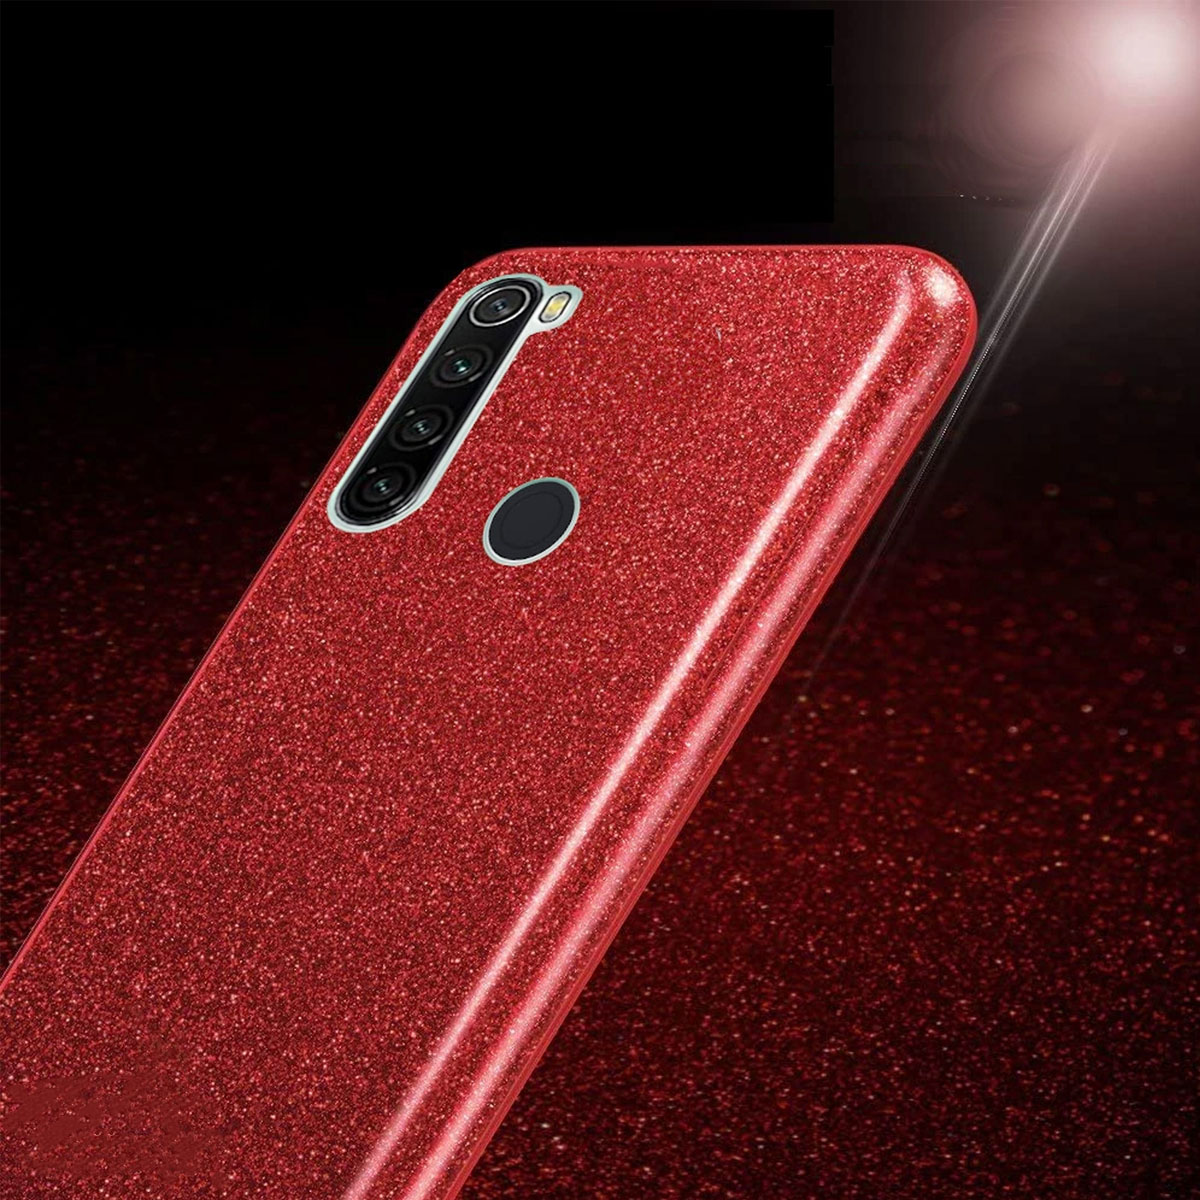 Чехол накладка Shine для XIAOMI Redmi Note 8T, силикон, блестки, цвет красный